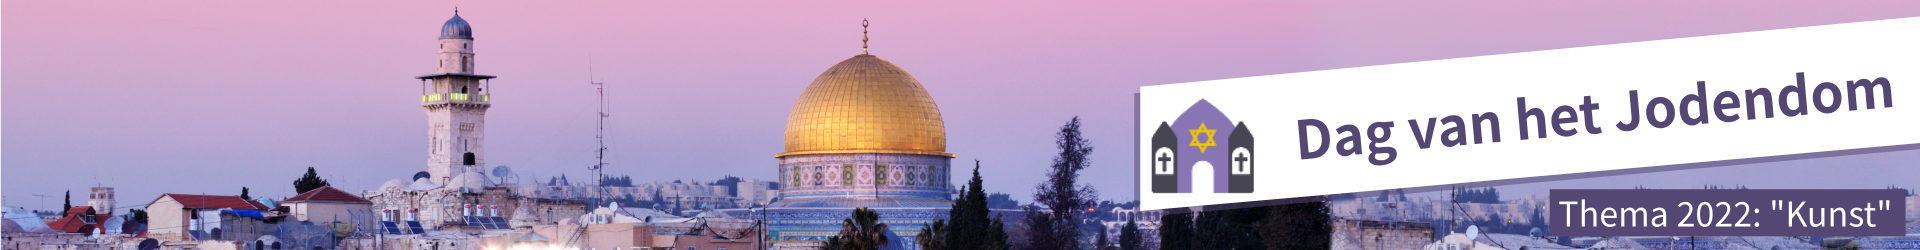 Folder Dag van het Jodendom 2015